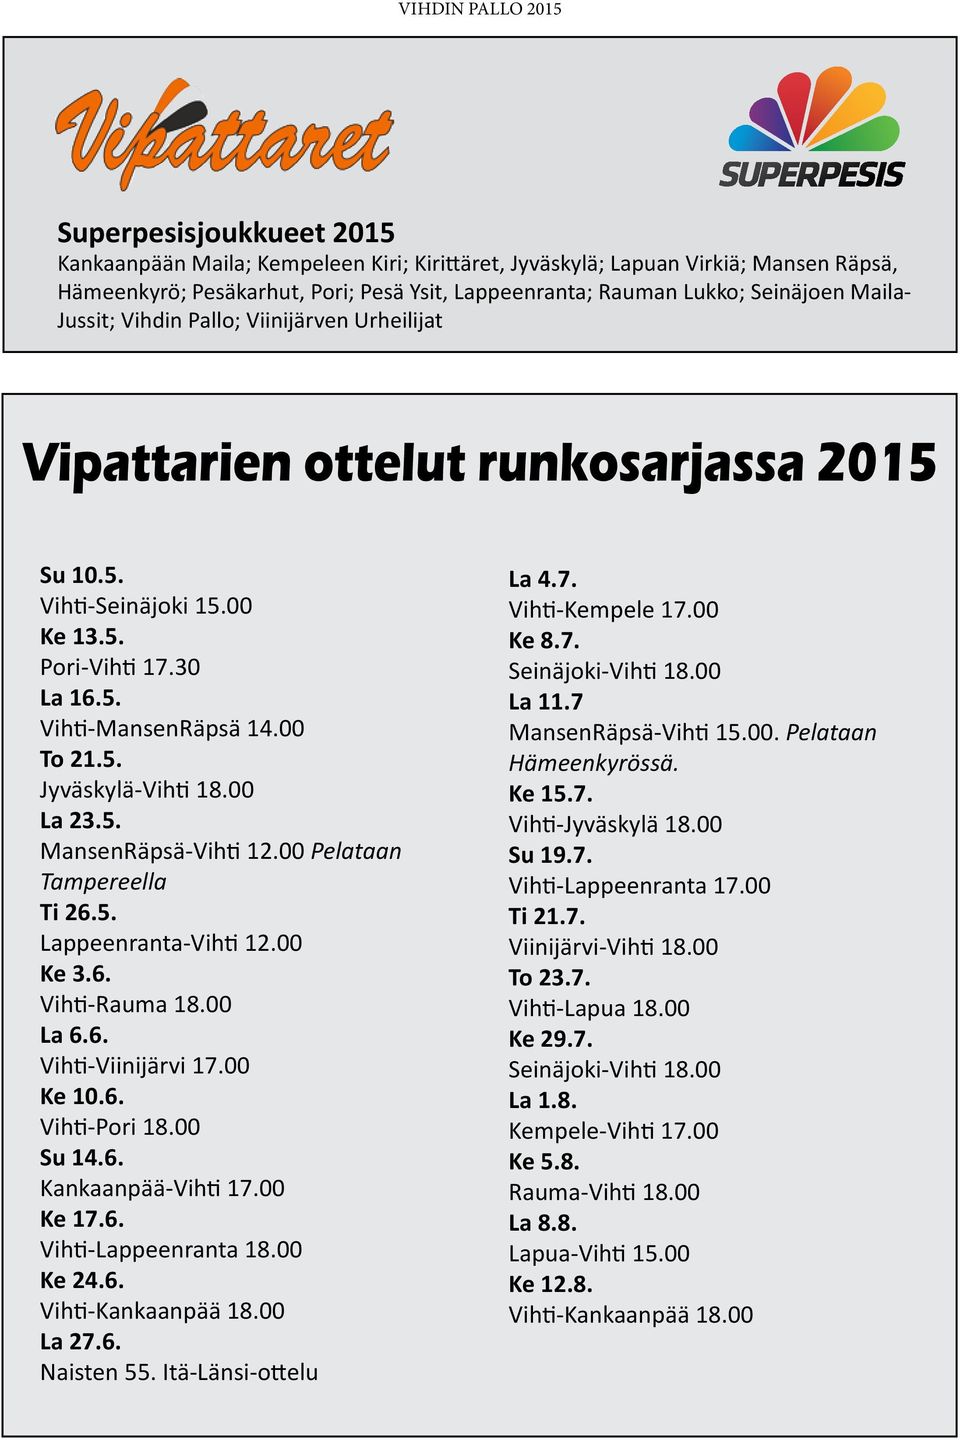 00 Pelataan Tampereella Ti 26.5. Lappeenranta-Vihti 12.00 Ke 3.6. Vihti-Rauma 18.00 La 6.6. Vihti-Viinijärvi 17.00 Ke 10.6. Vihti-Pori 18.00 Su 14.6. Kankaanpää-Vihti 17.00 Ke 17.6. Vihti-Lappeenranta 18.